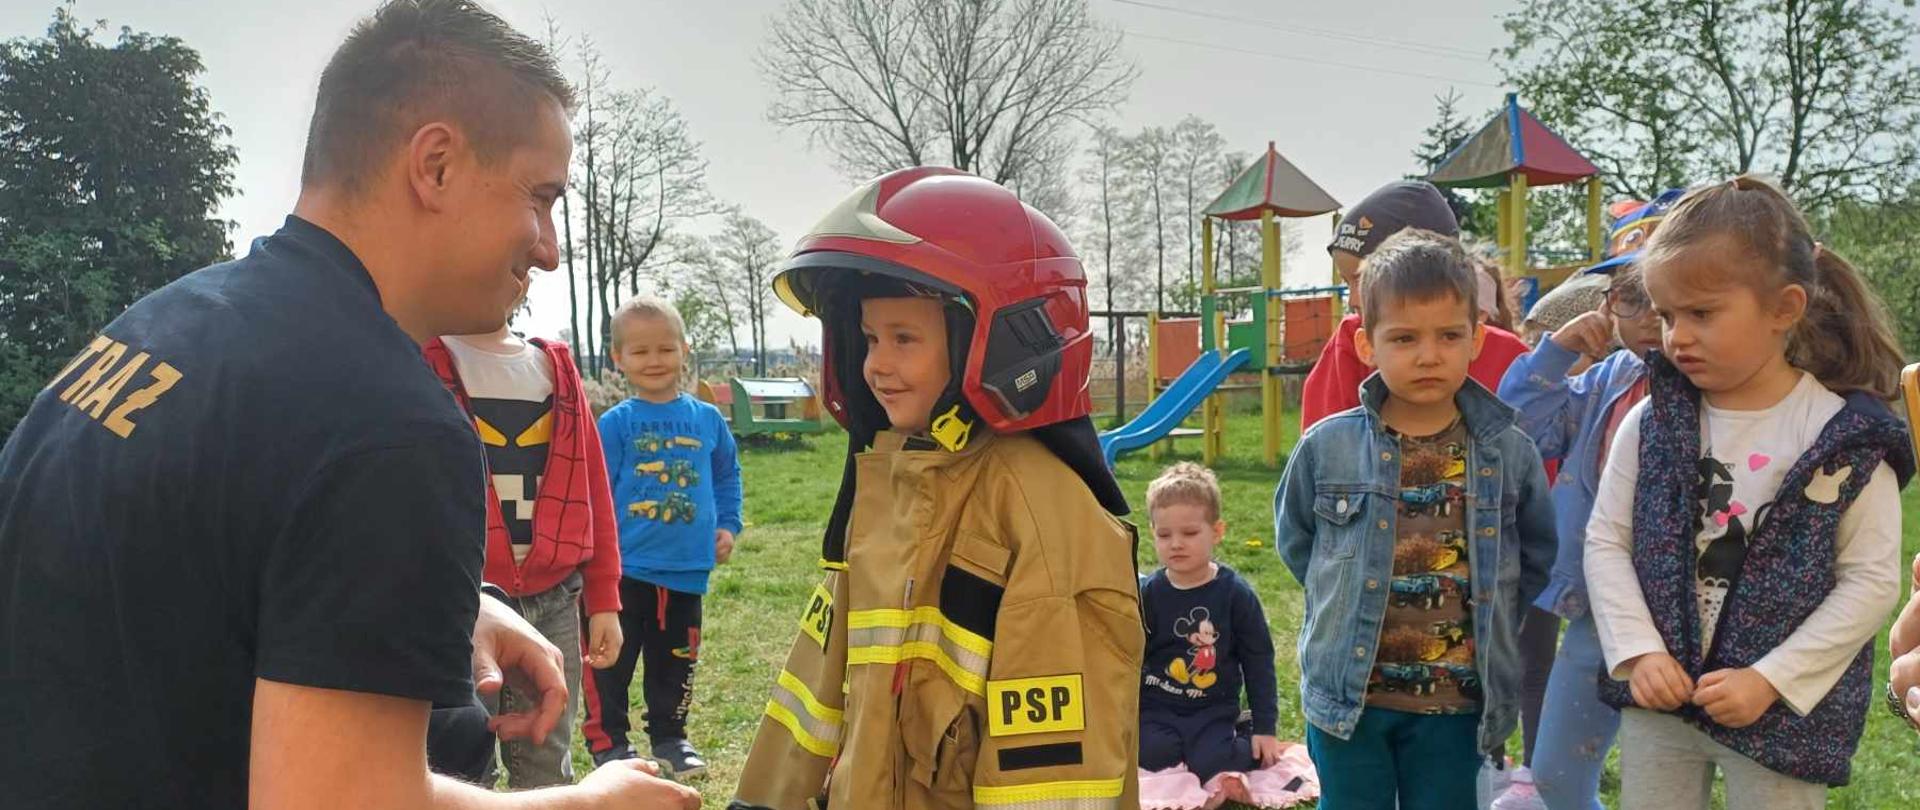 Zdjęcie przedstawia strażaka i dziecko w stroju strażackim, wokół inne dzieci, które obserwują.